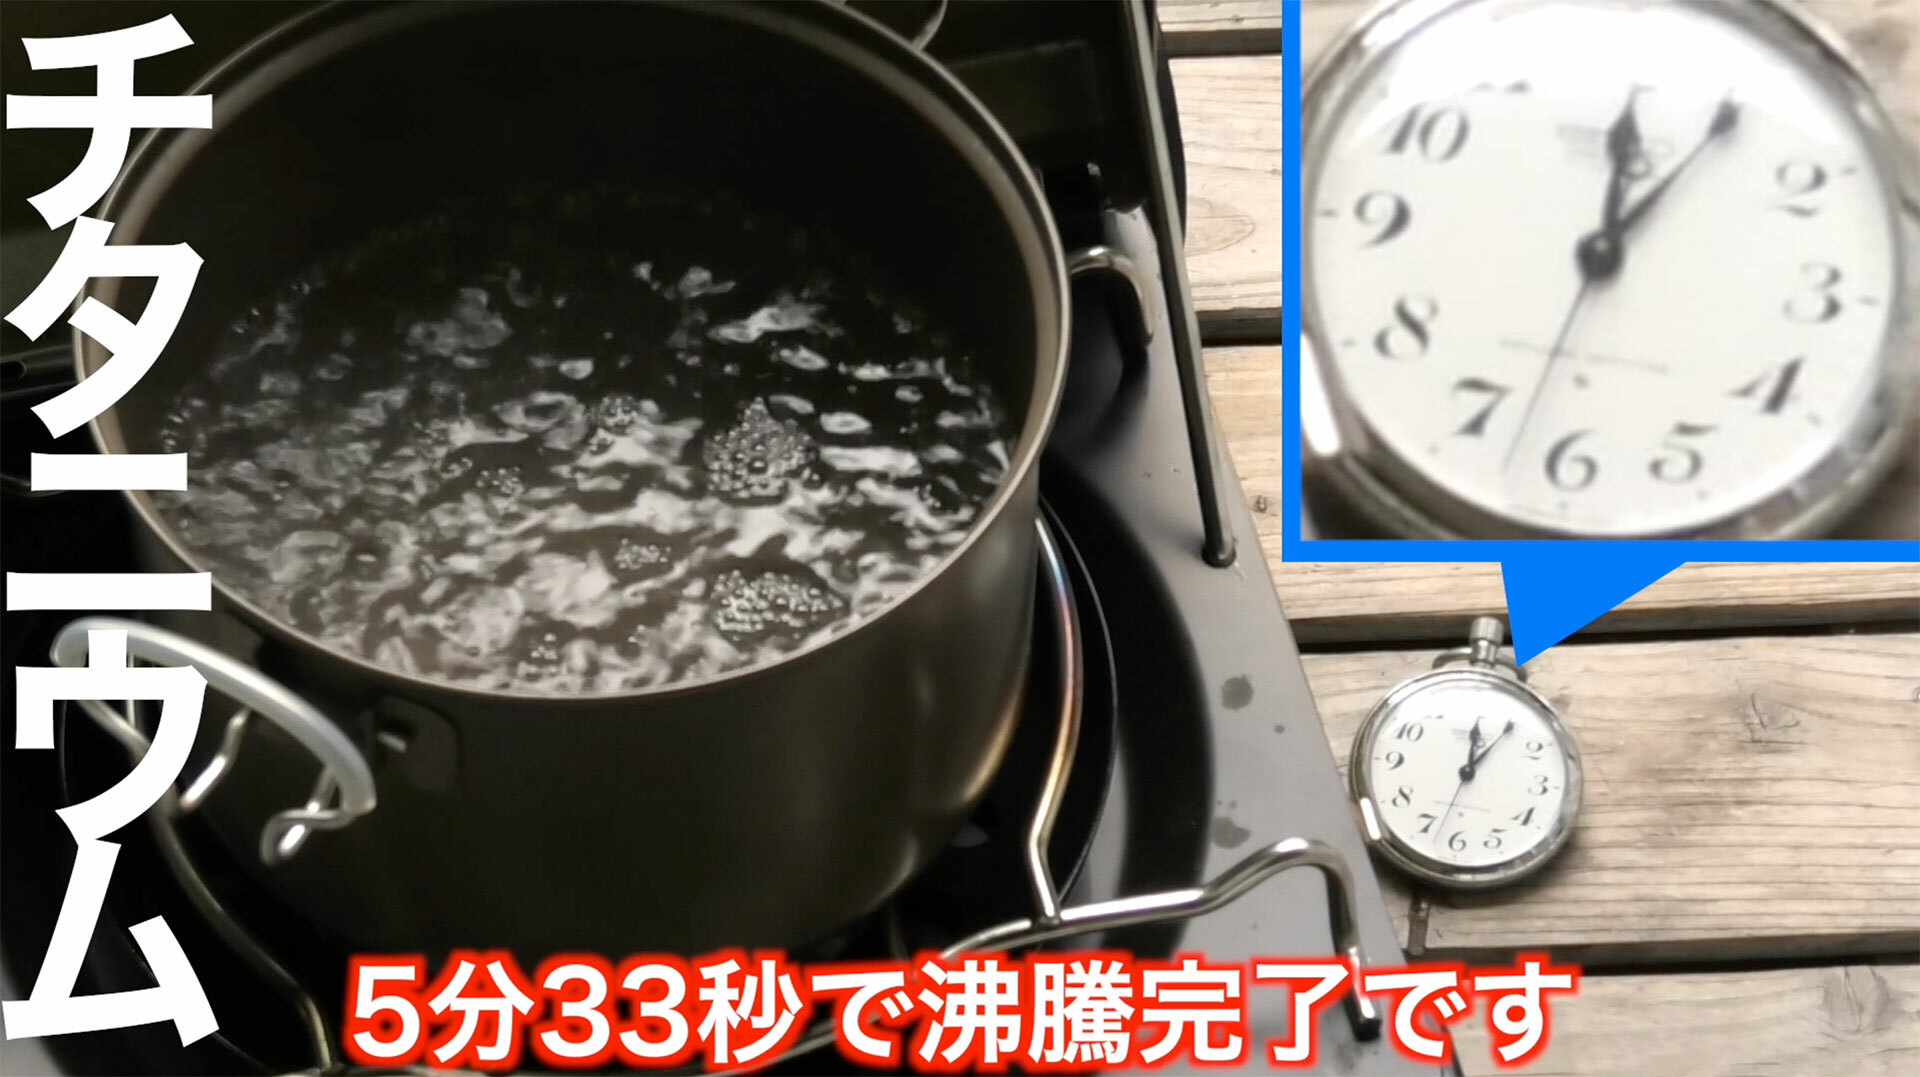 チタン製のクッカーは5分25秒で沸騰開始、5分33秒で煮沸状態